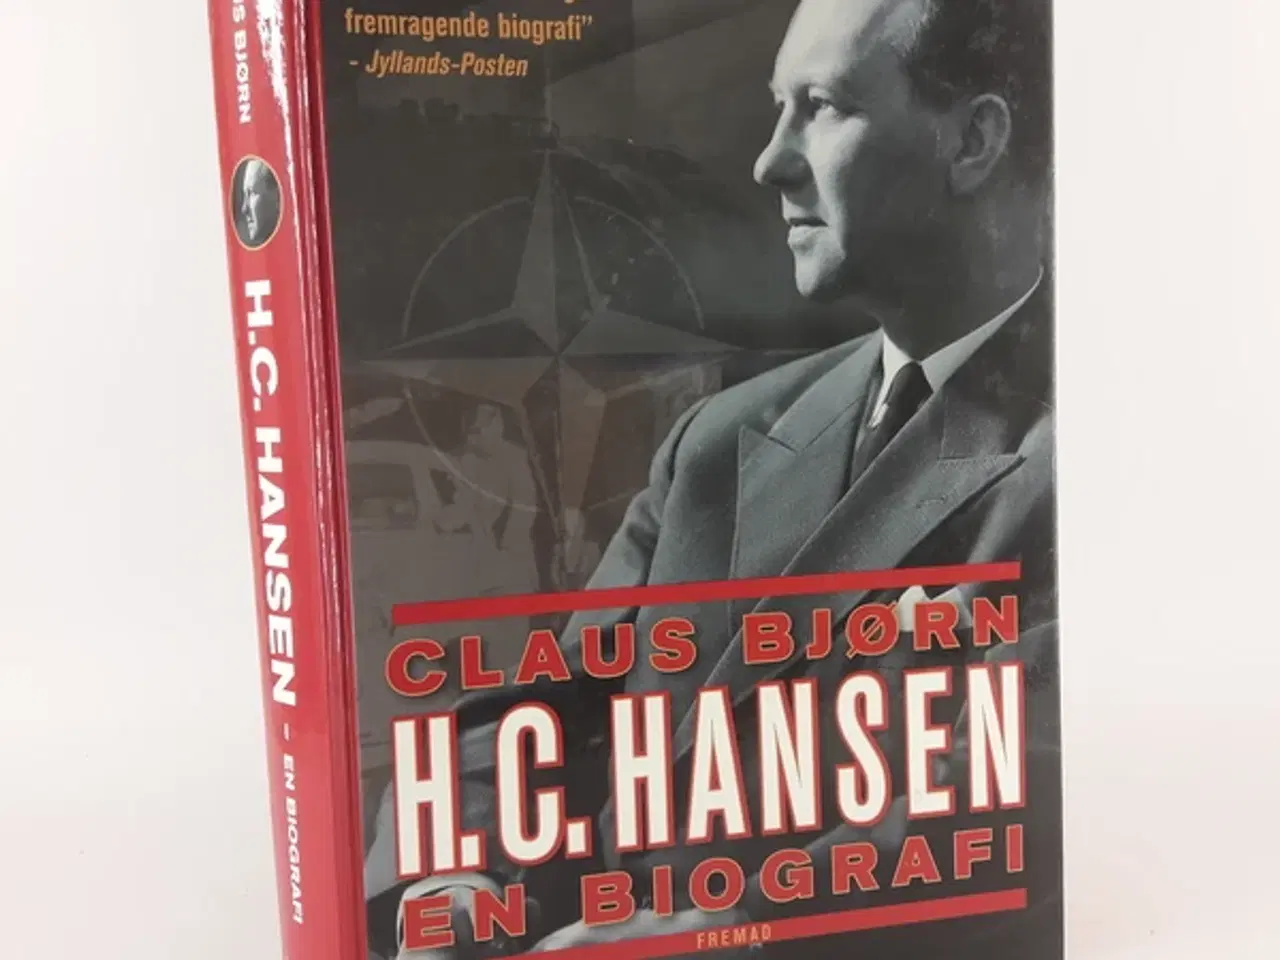 Billede 2 - H.C. Hansen - en biografi skrevet